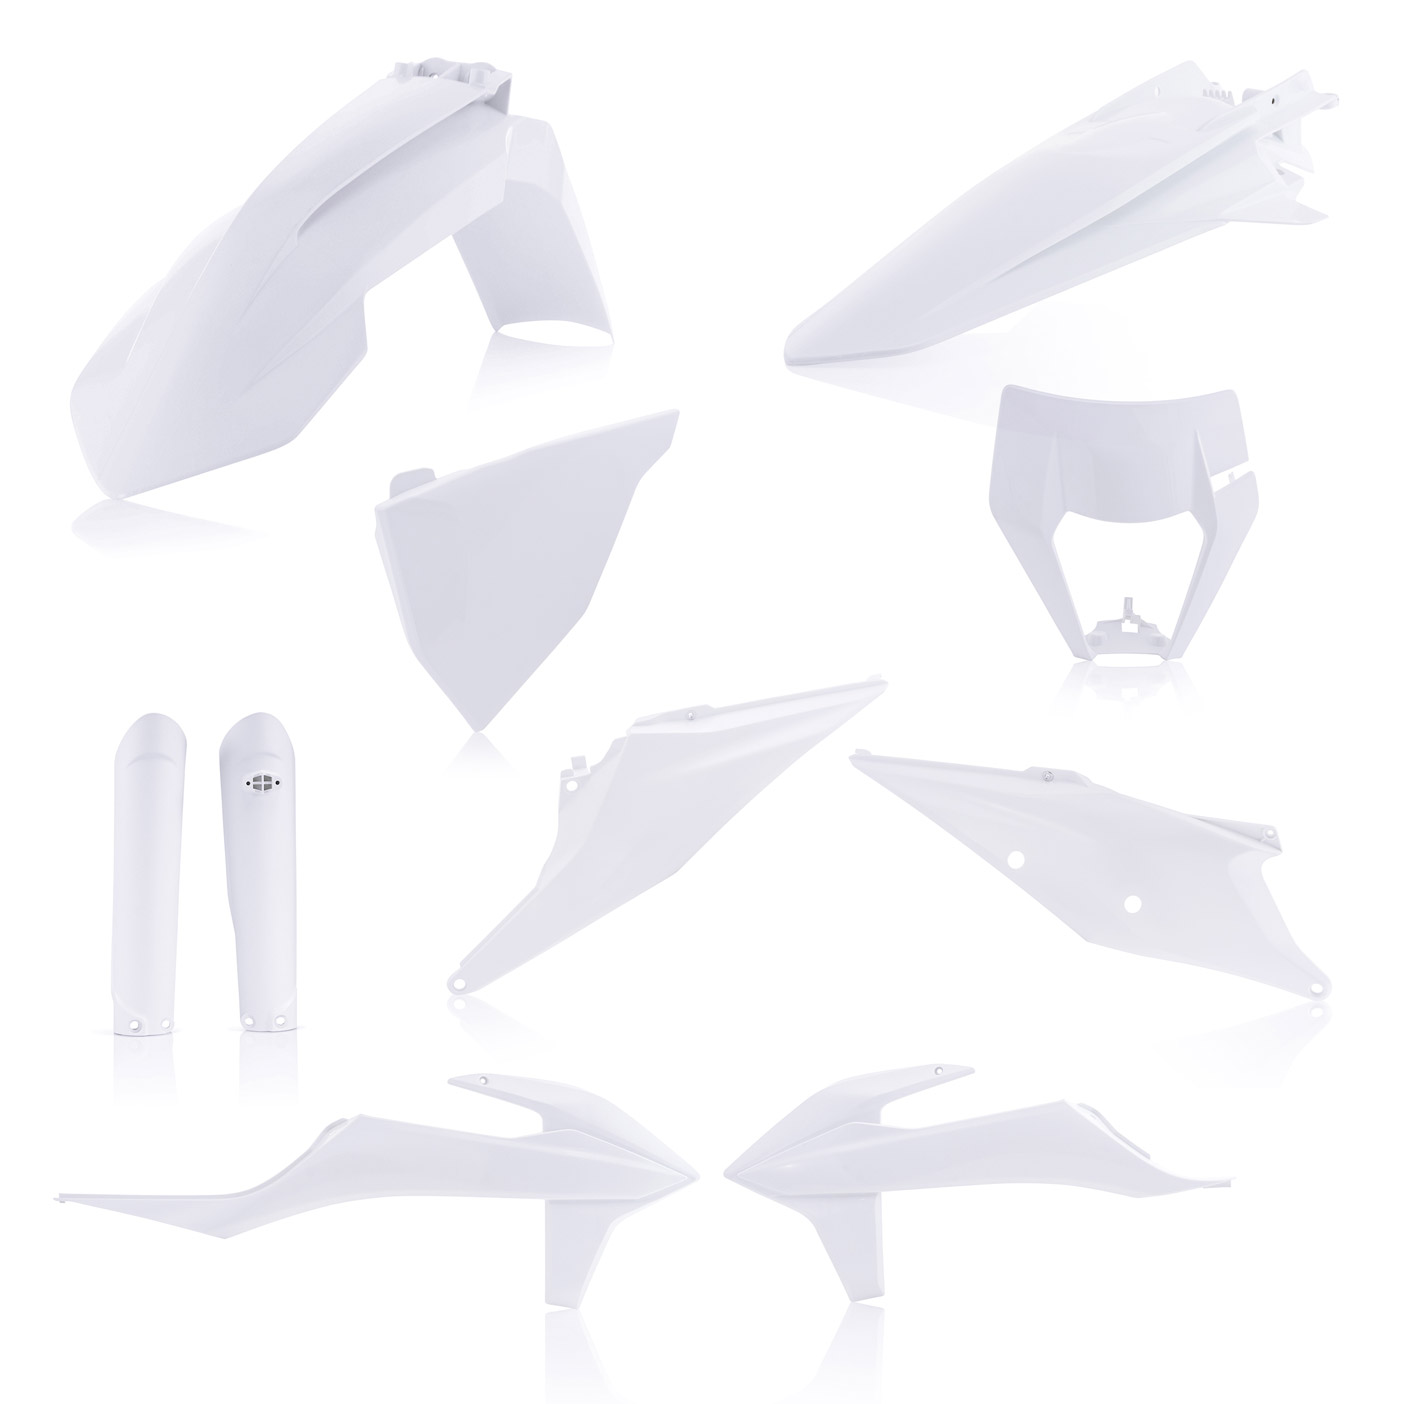 Plastikteile für deine KTM EXC und EXC-F in weiß, bestehend aus Frontkotflügel, Heckkotflügel, Tankspoiler, Gabelschoner, Nummerntafeln und Lampenmaske